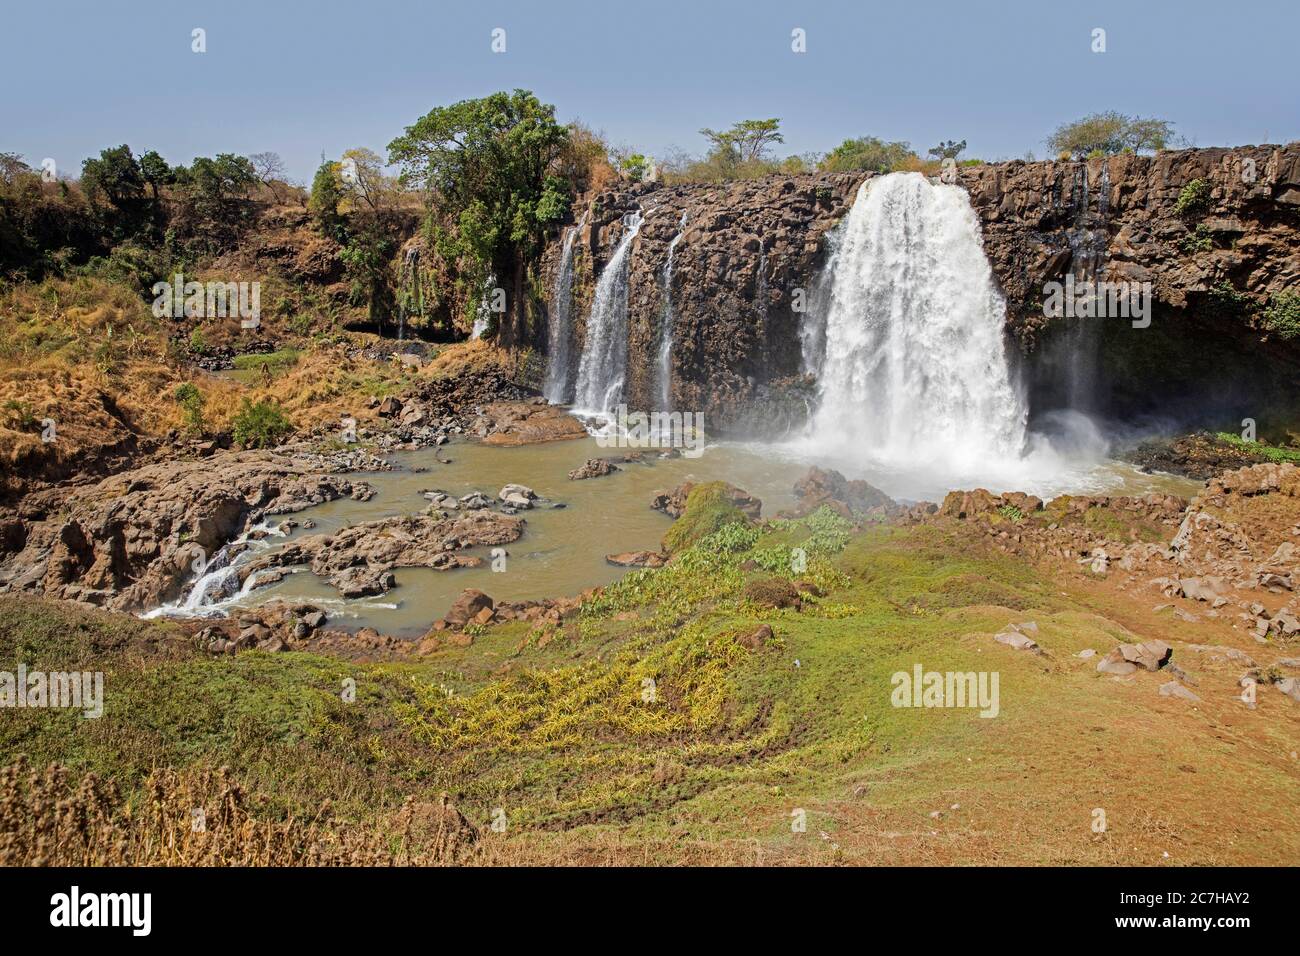 TIS Abay / Blue Nile Falls, chute d'eau sur le Nil Bleu près de Bahir Dar pendant la saison sèche, région d'Amhara, Ethiopie, Afrique Banque D'Images